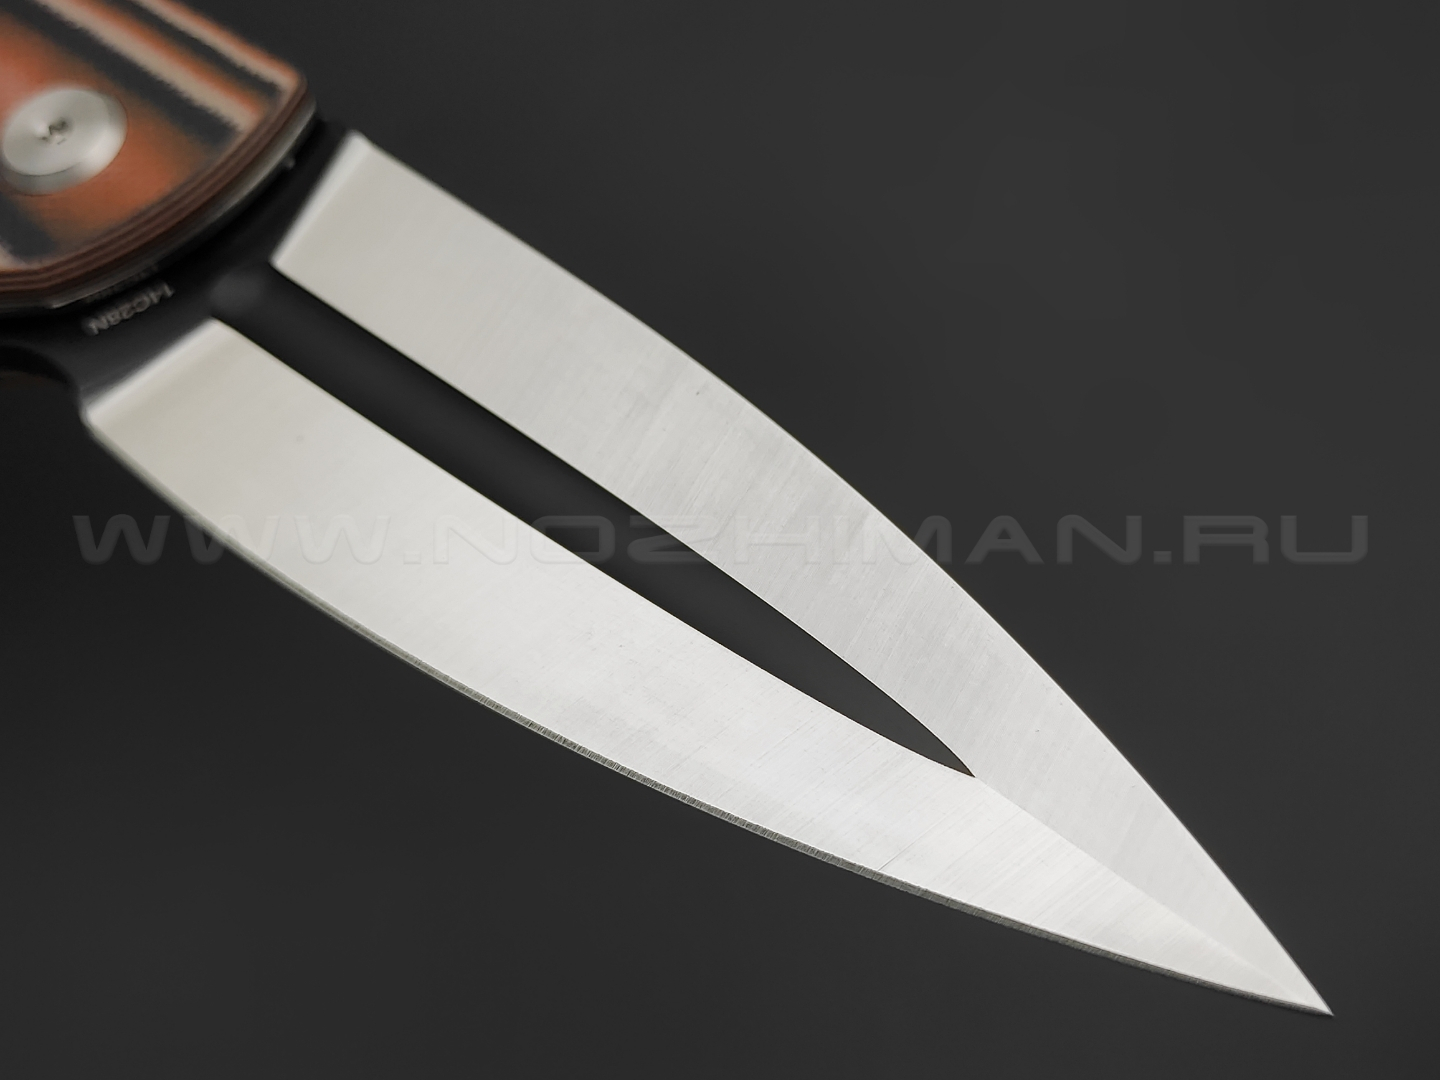 Нож Bestech Fin BG34C-2 сталь Sandvic 14C28N, рукоять G10 black & orange